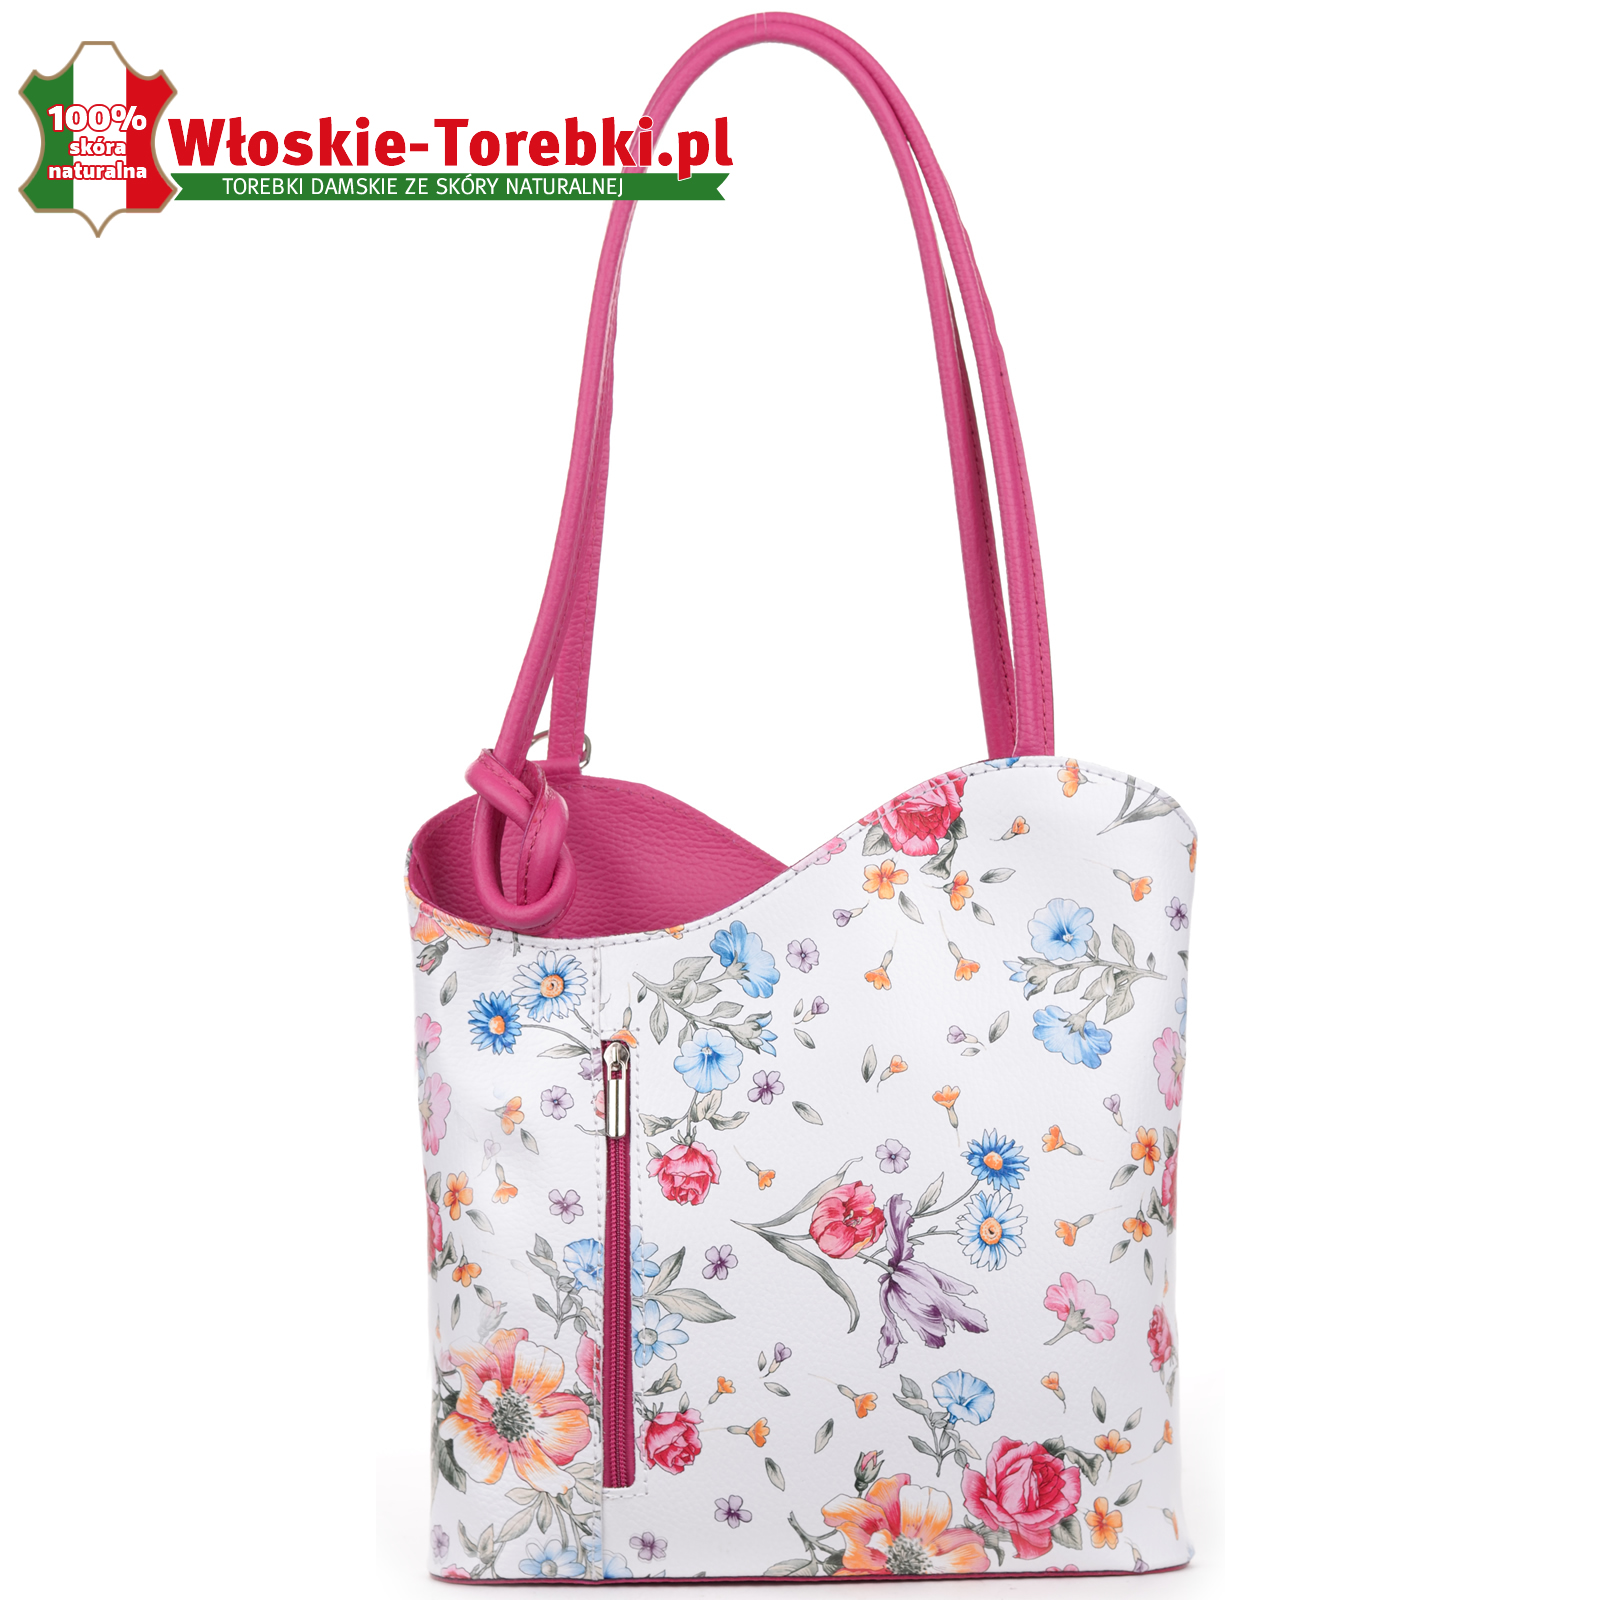 Biało - różowa torebka w kwiaty torboplecak Velia